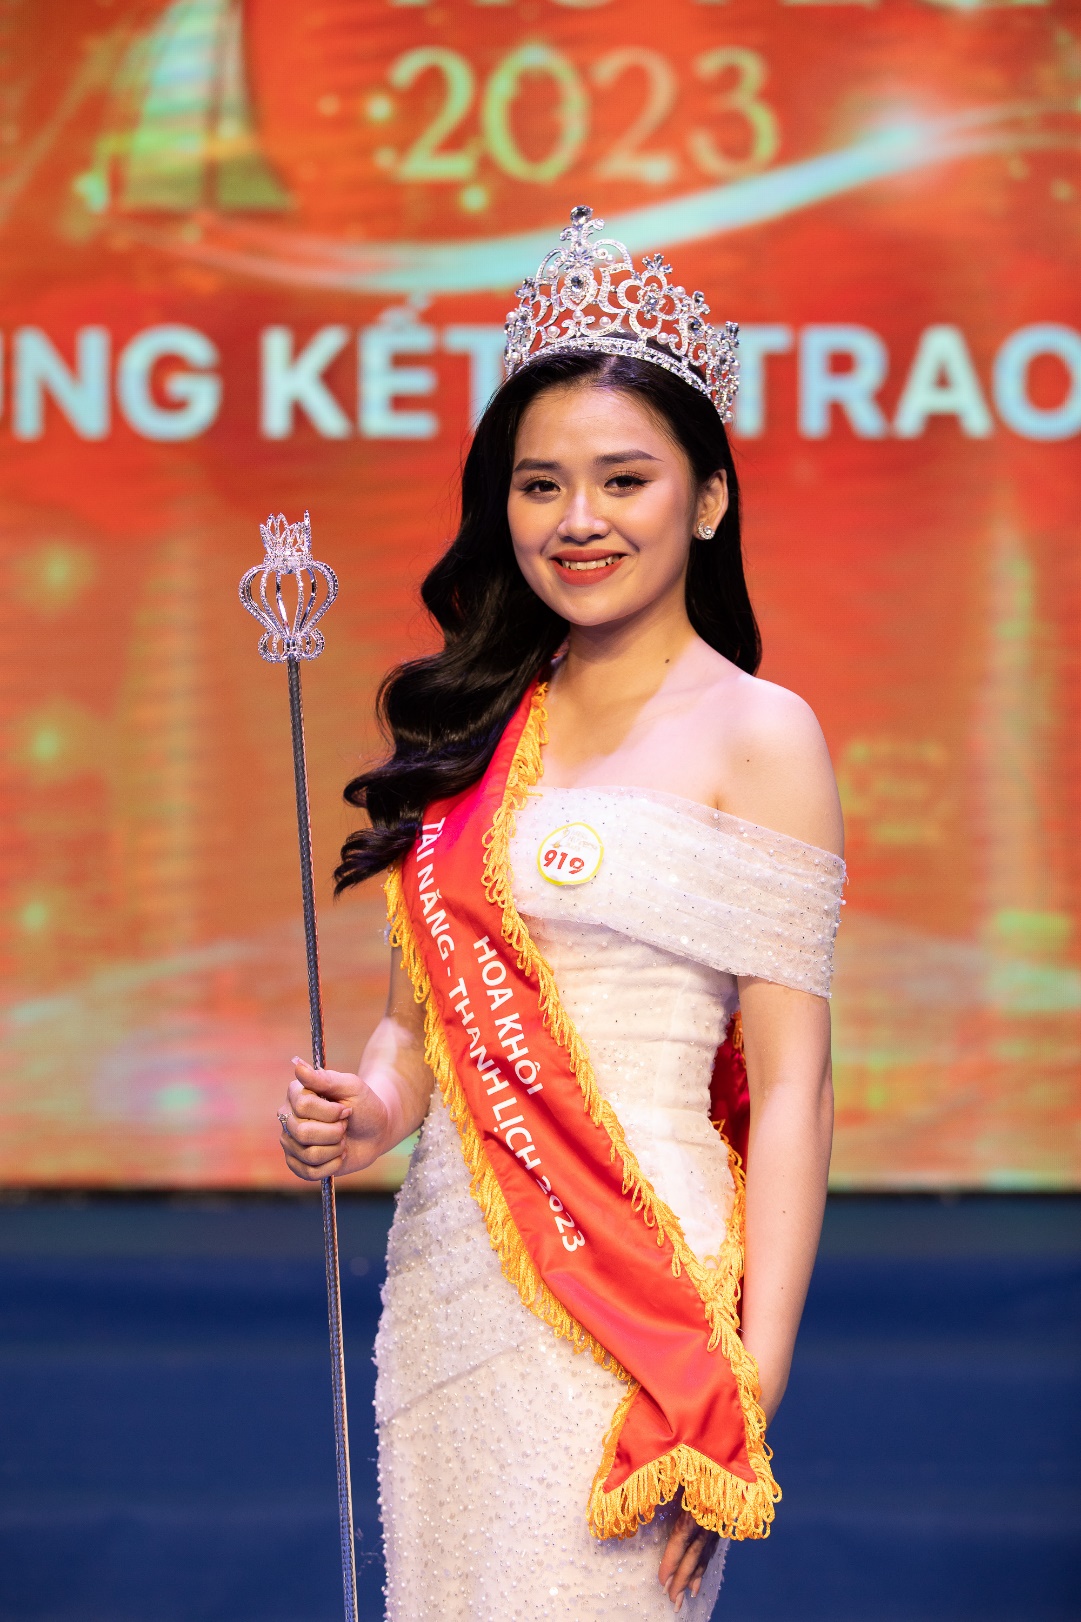 Hoa khôi Miss HUTECH 2023 Nguyễn Thị Tuyết Nhung dự định tham gia các cuộc thi sắc đẹp lớn hơn trong năm nay - Ảnh 8.